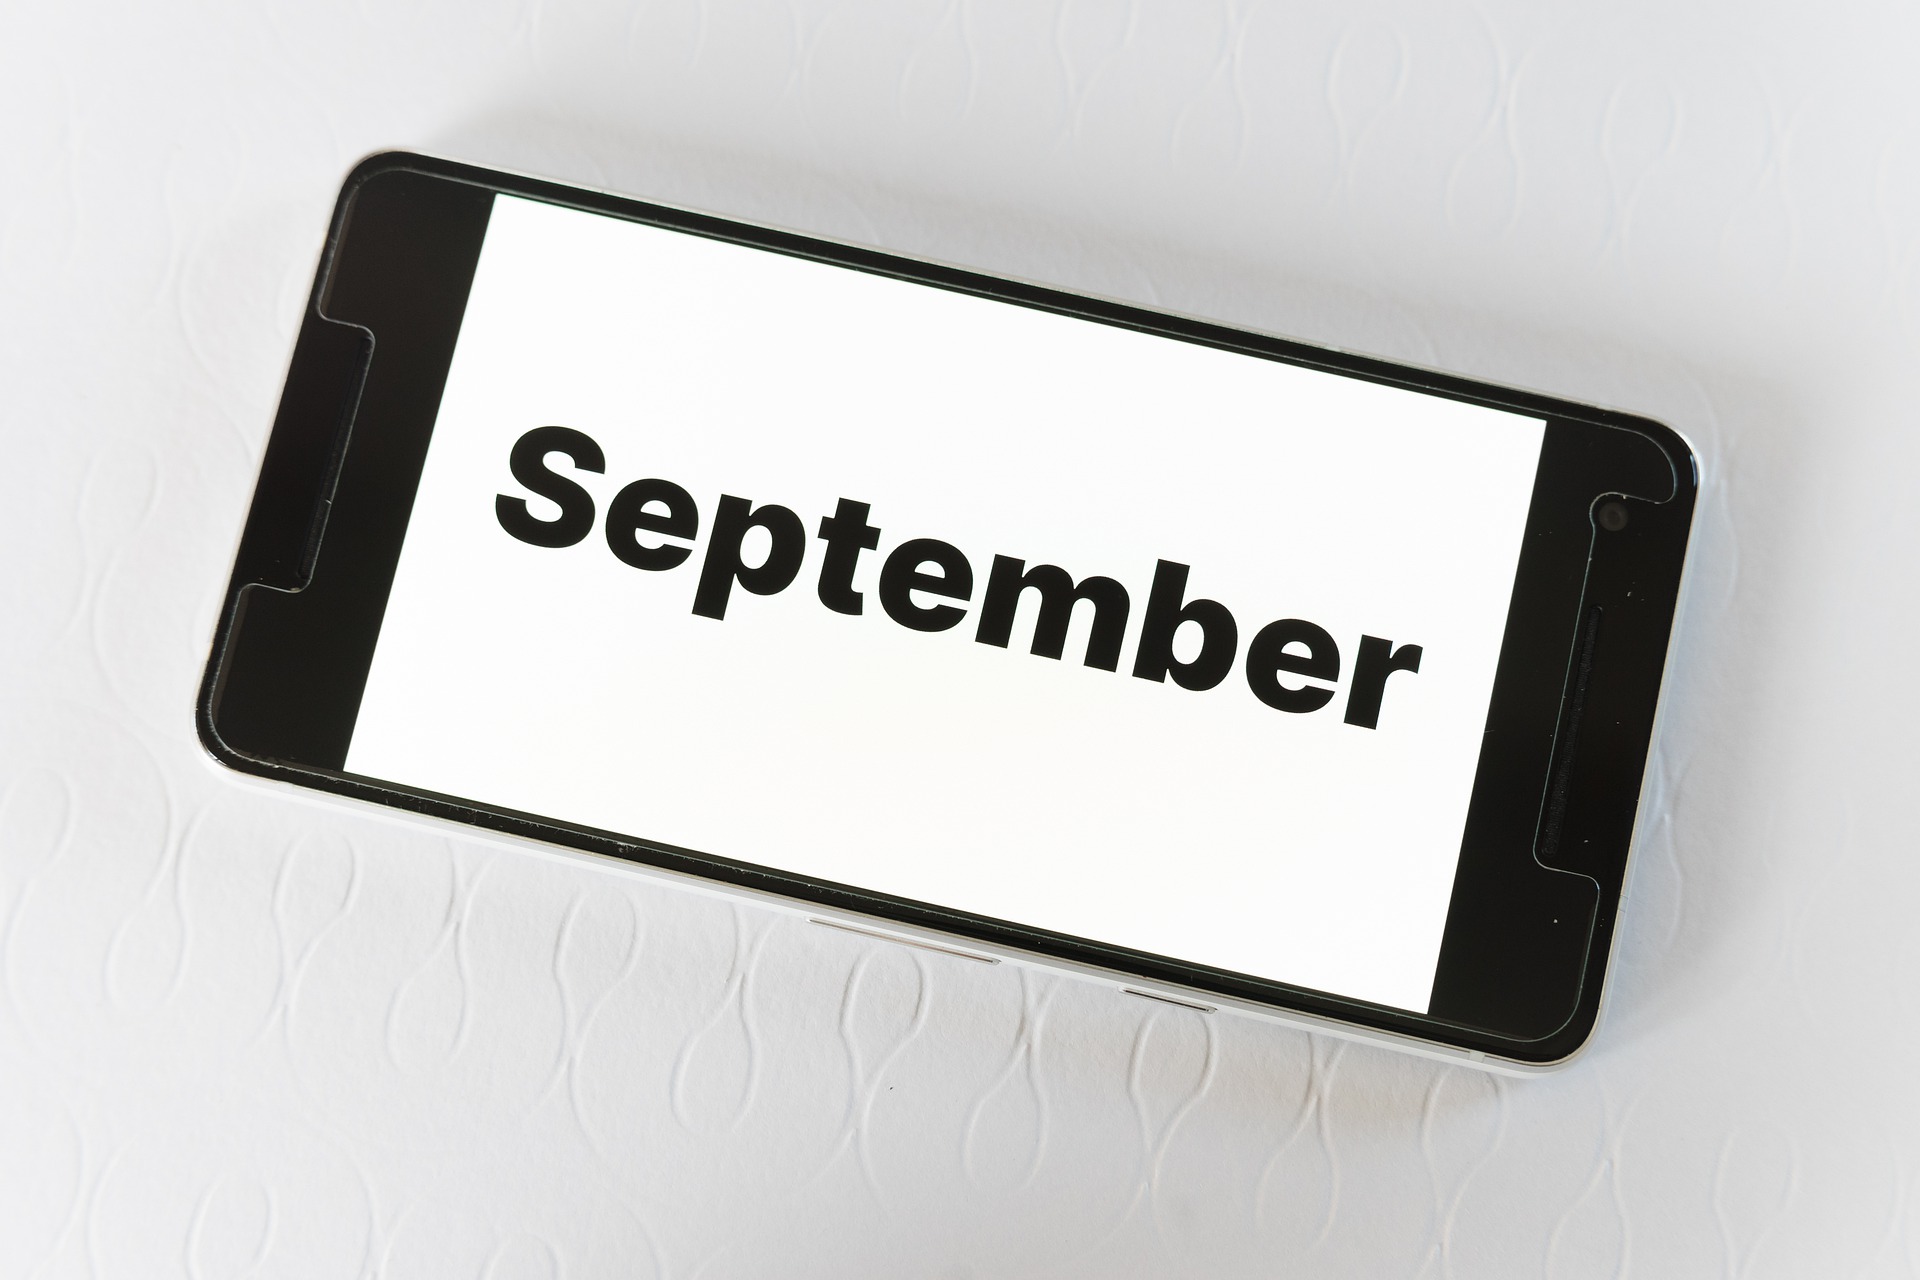 Moratorias de alquileres, hipotecas y suministros hasta el 30 de septiembre